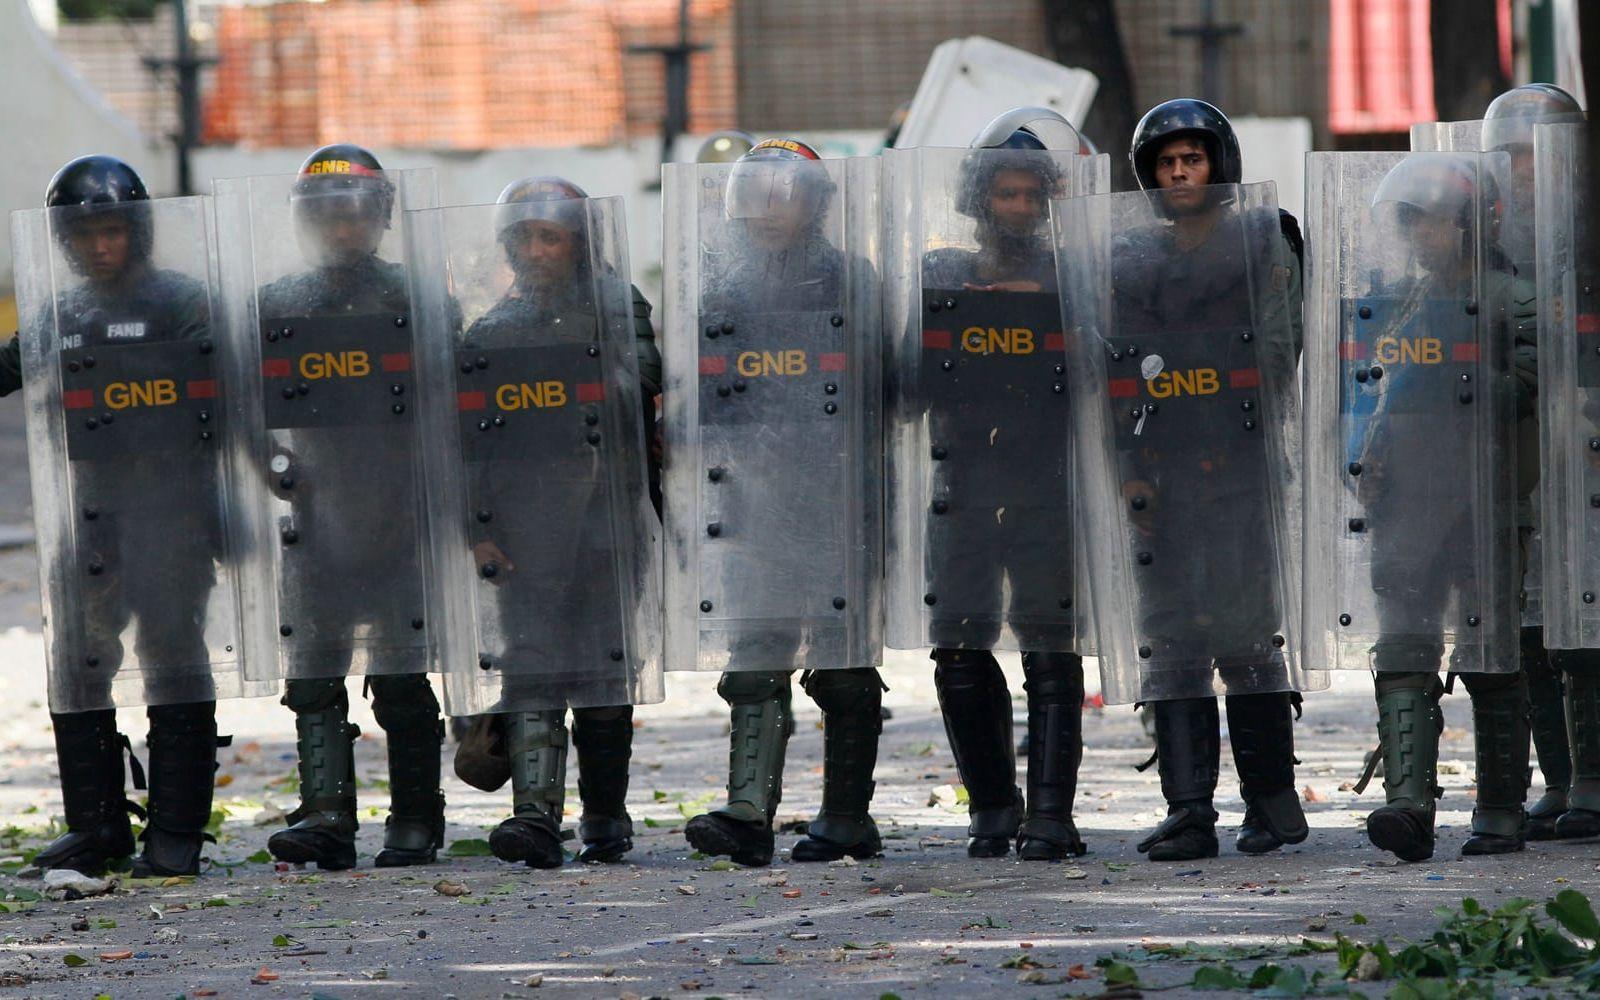 Veckan fram till valet i Venezuela har kantats av stora oroligheter och konfrontationer mellan polis och demonstranter. Valdagen blev inget undantag. Bild: TT
